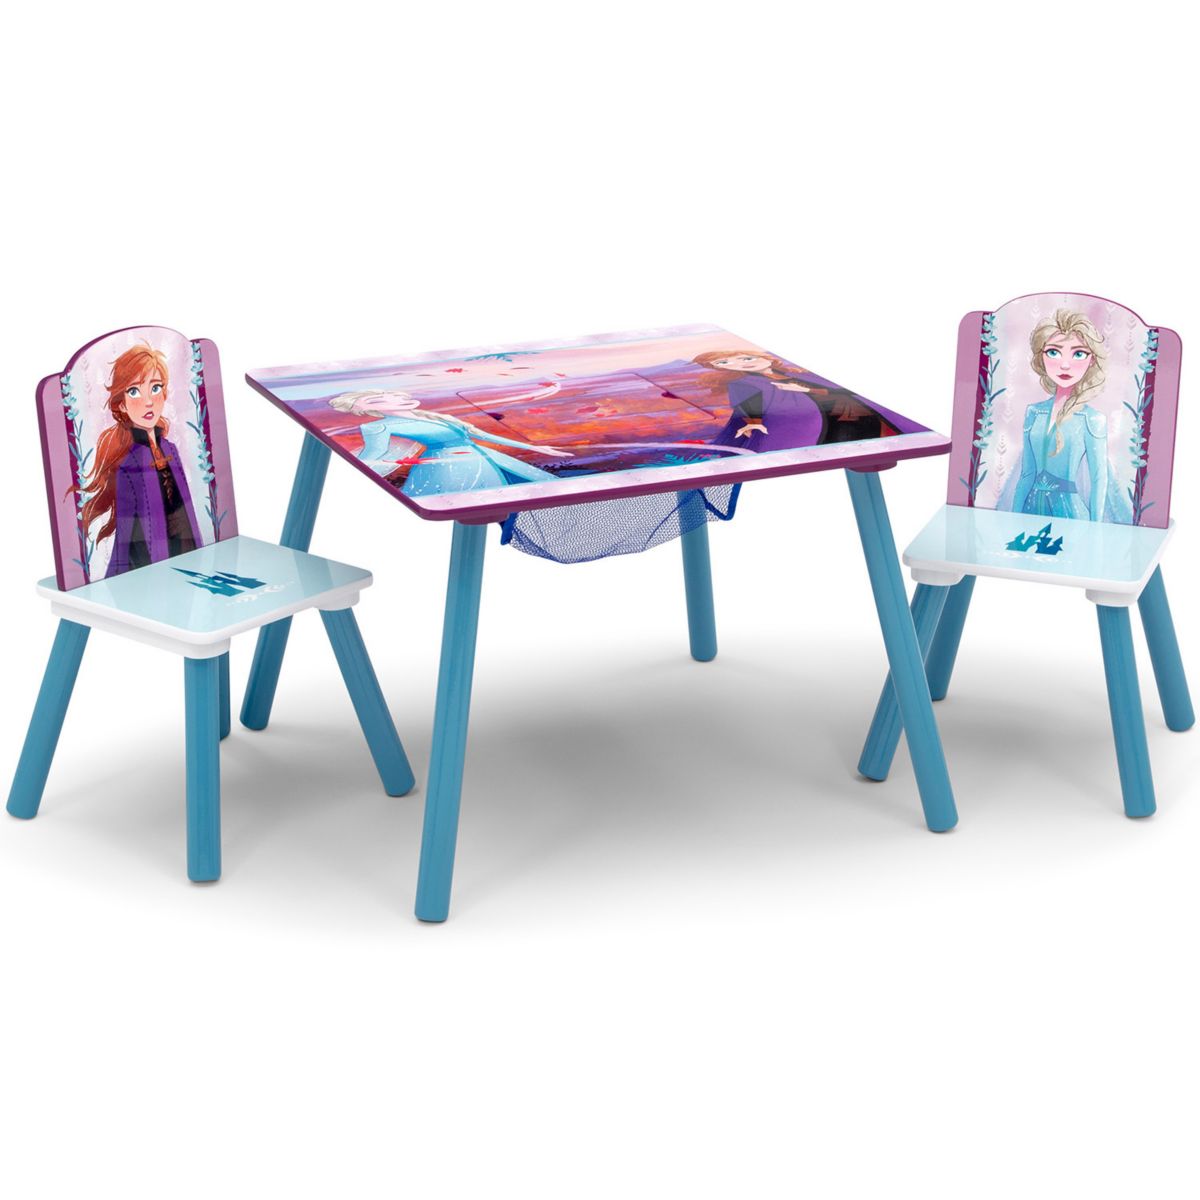 Хранение вещей в детской Delta Children Стол и стулья с хранилищем Disney's Frozen 2 Delta Children